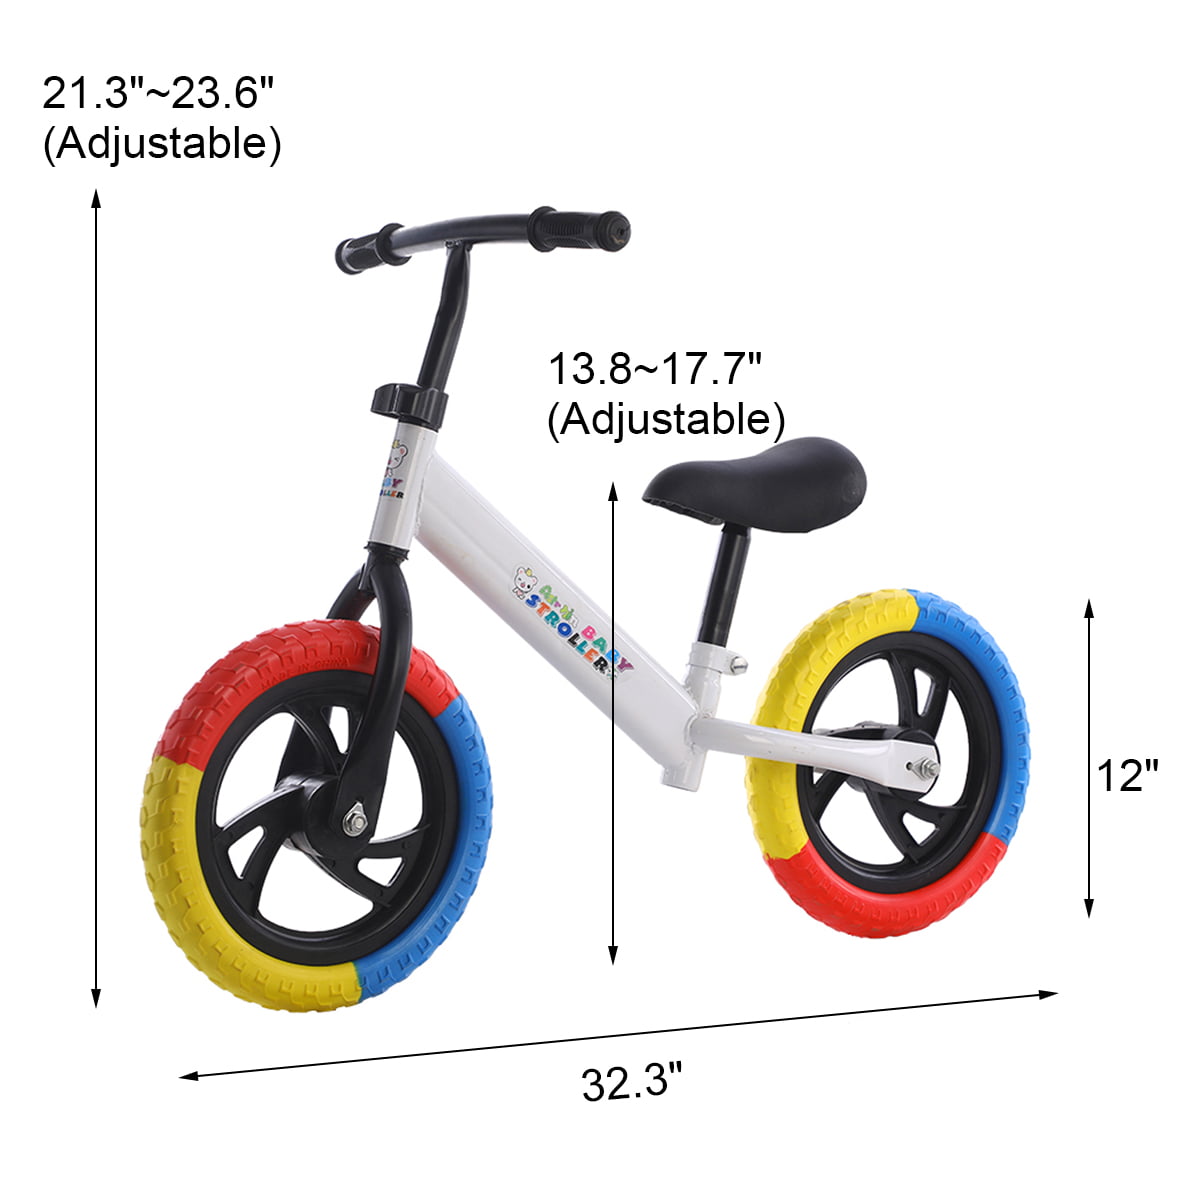 Details about   2 Wheels No Pedal Toddler Balance Bike Kids Training Walker bmx Bike Adjustable 